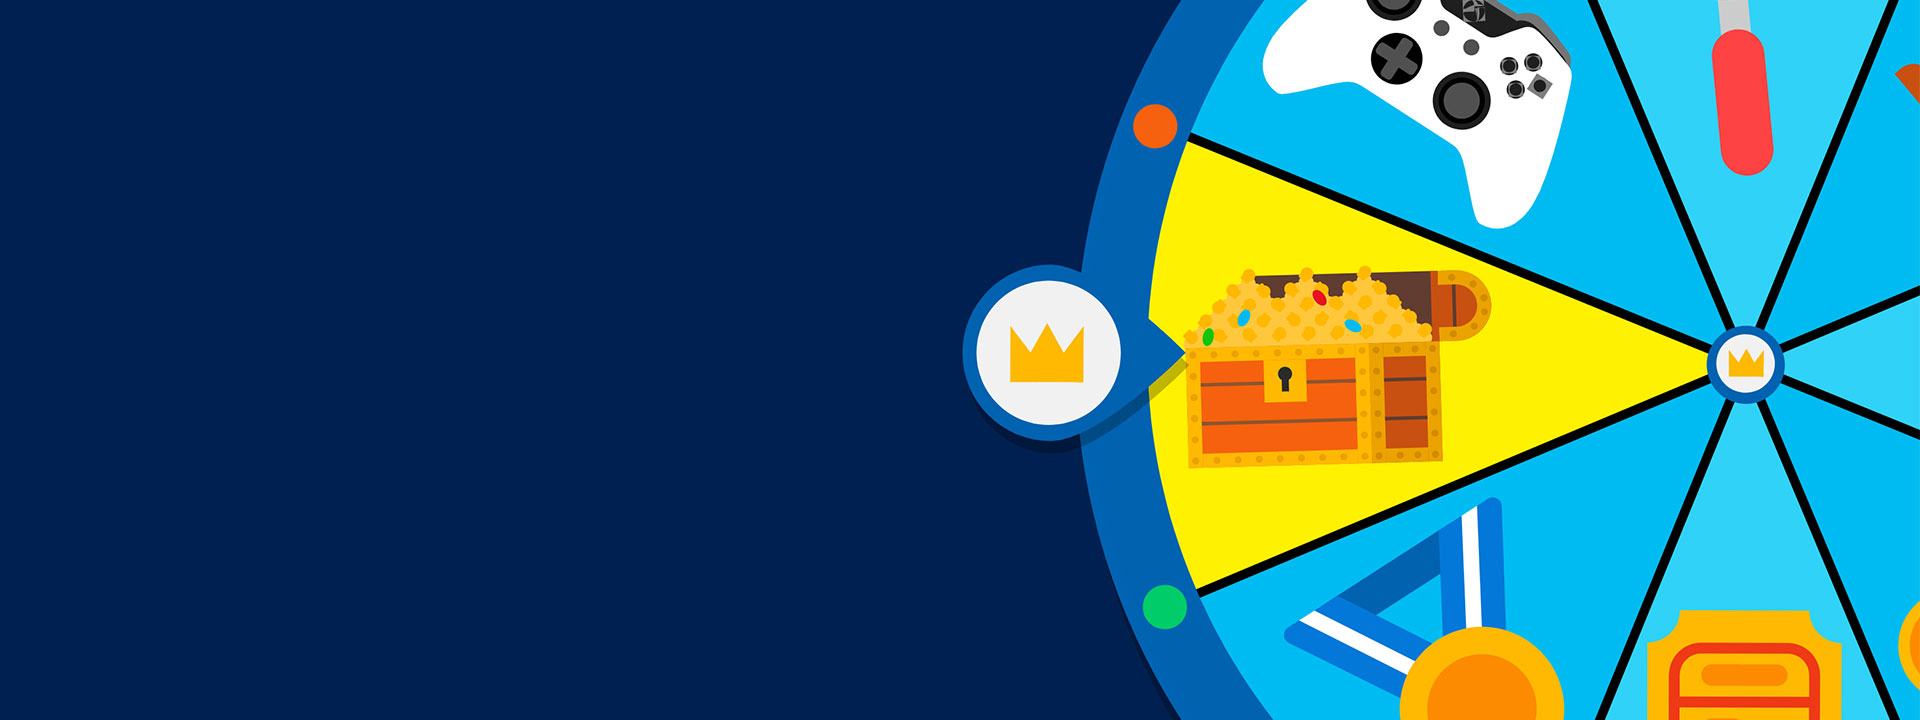 Une roue de la fortune montrant divers objets tels qu’une manette Xbox, un coffre au trésor plein d’or et une médaille d’or